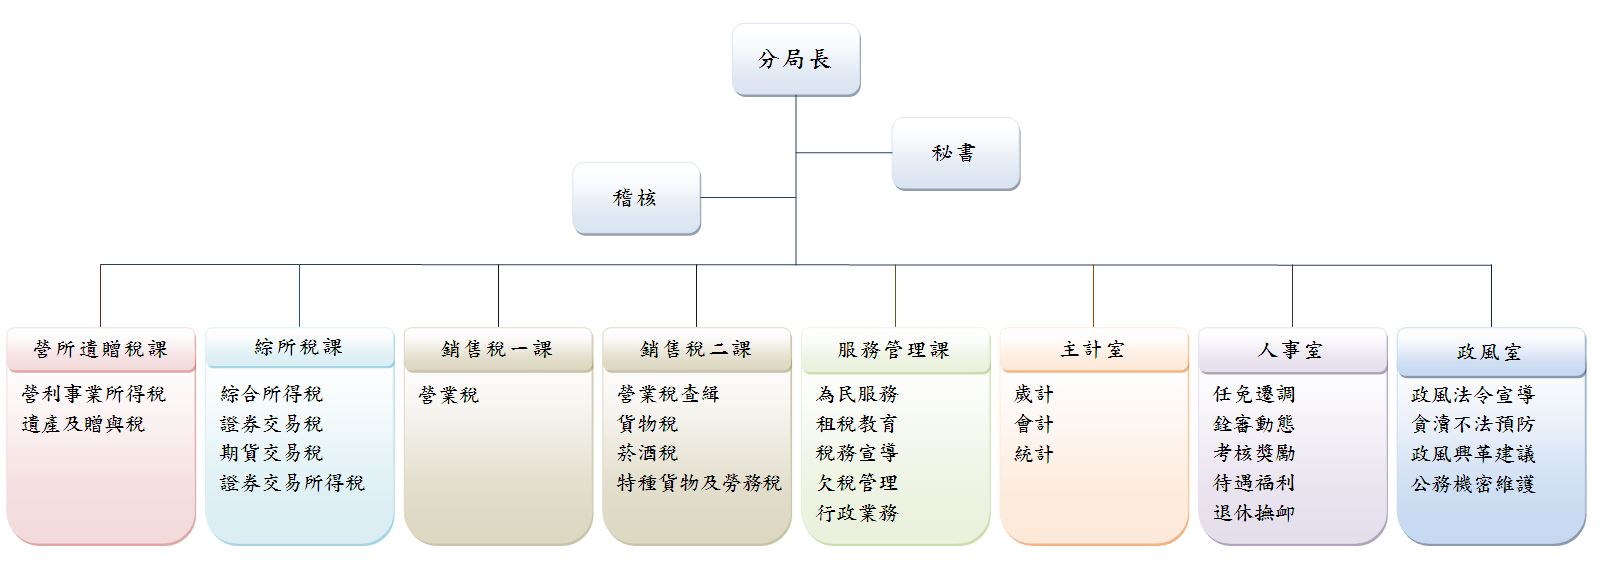 臺南分局組織圖